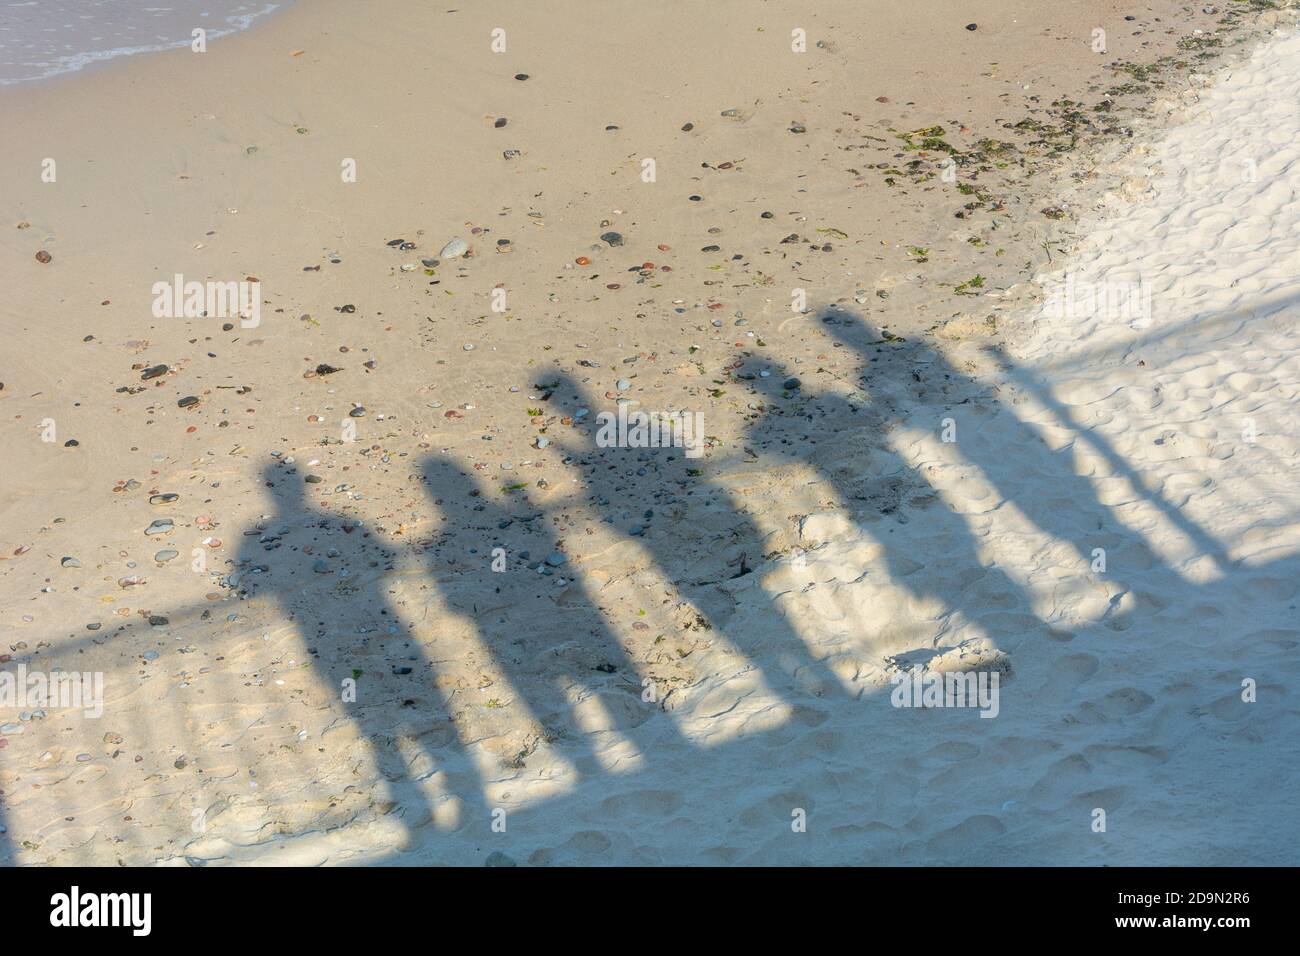 Sombras de personas en la arena cerca del mar. Concepto de recuerdo, despedida a seres queridos, partida a otra realidad, muerte. Foto de stock